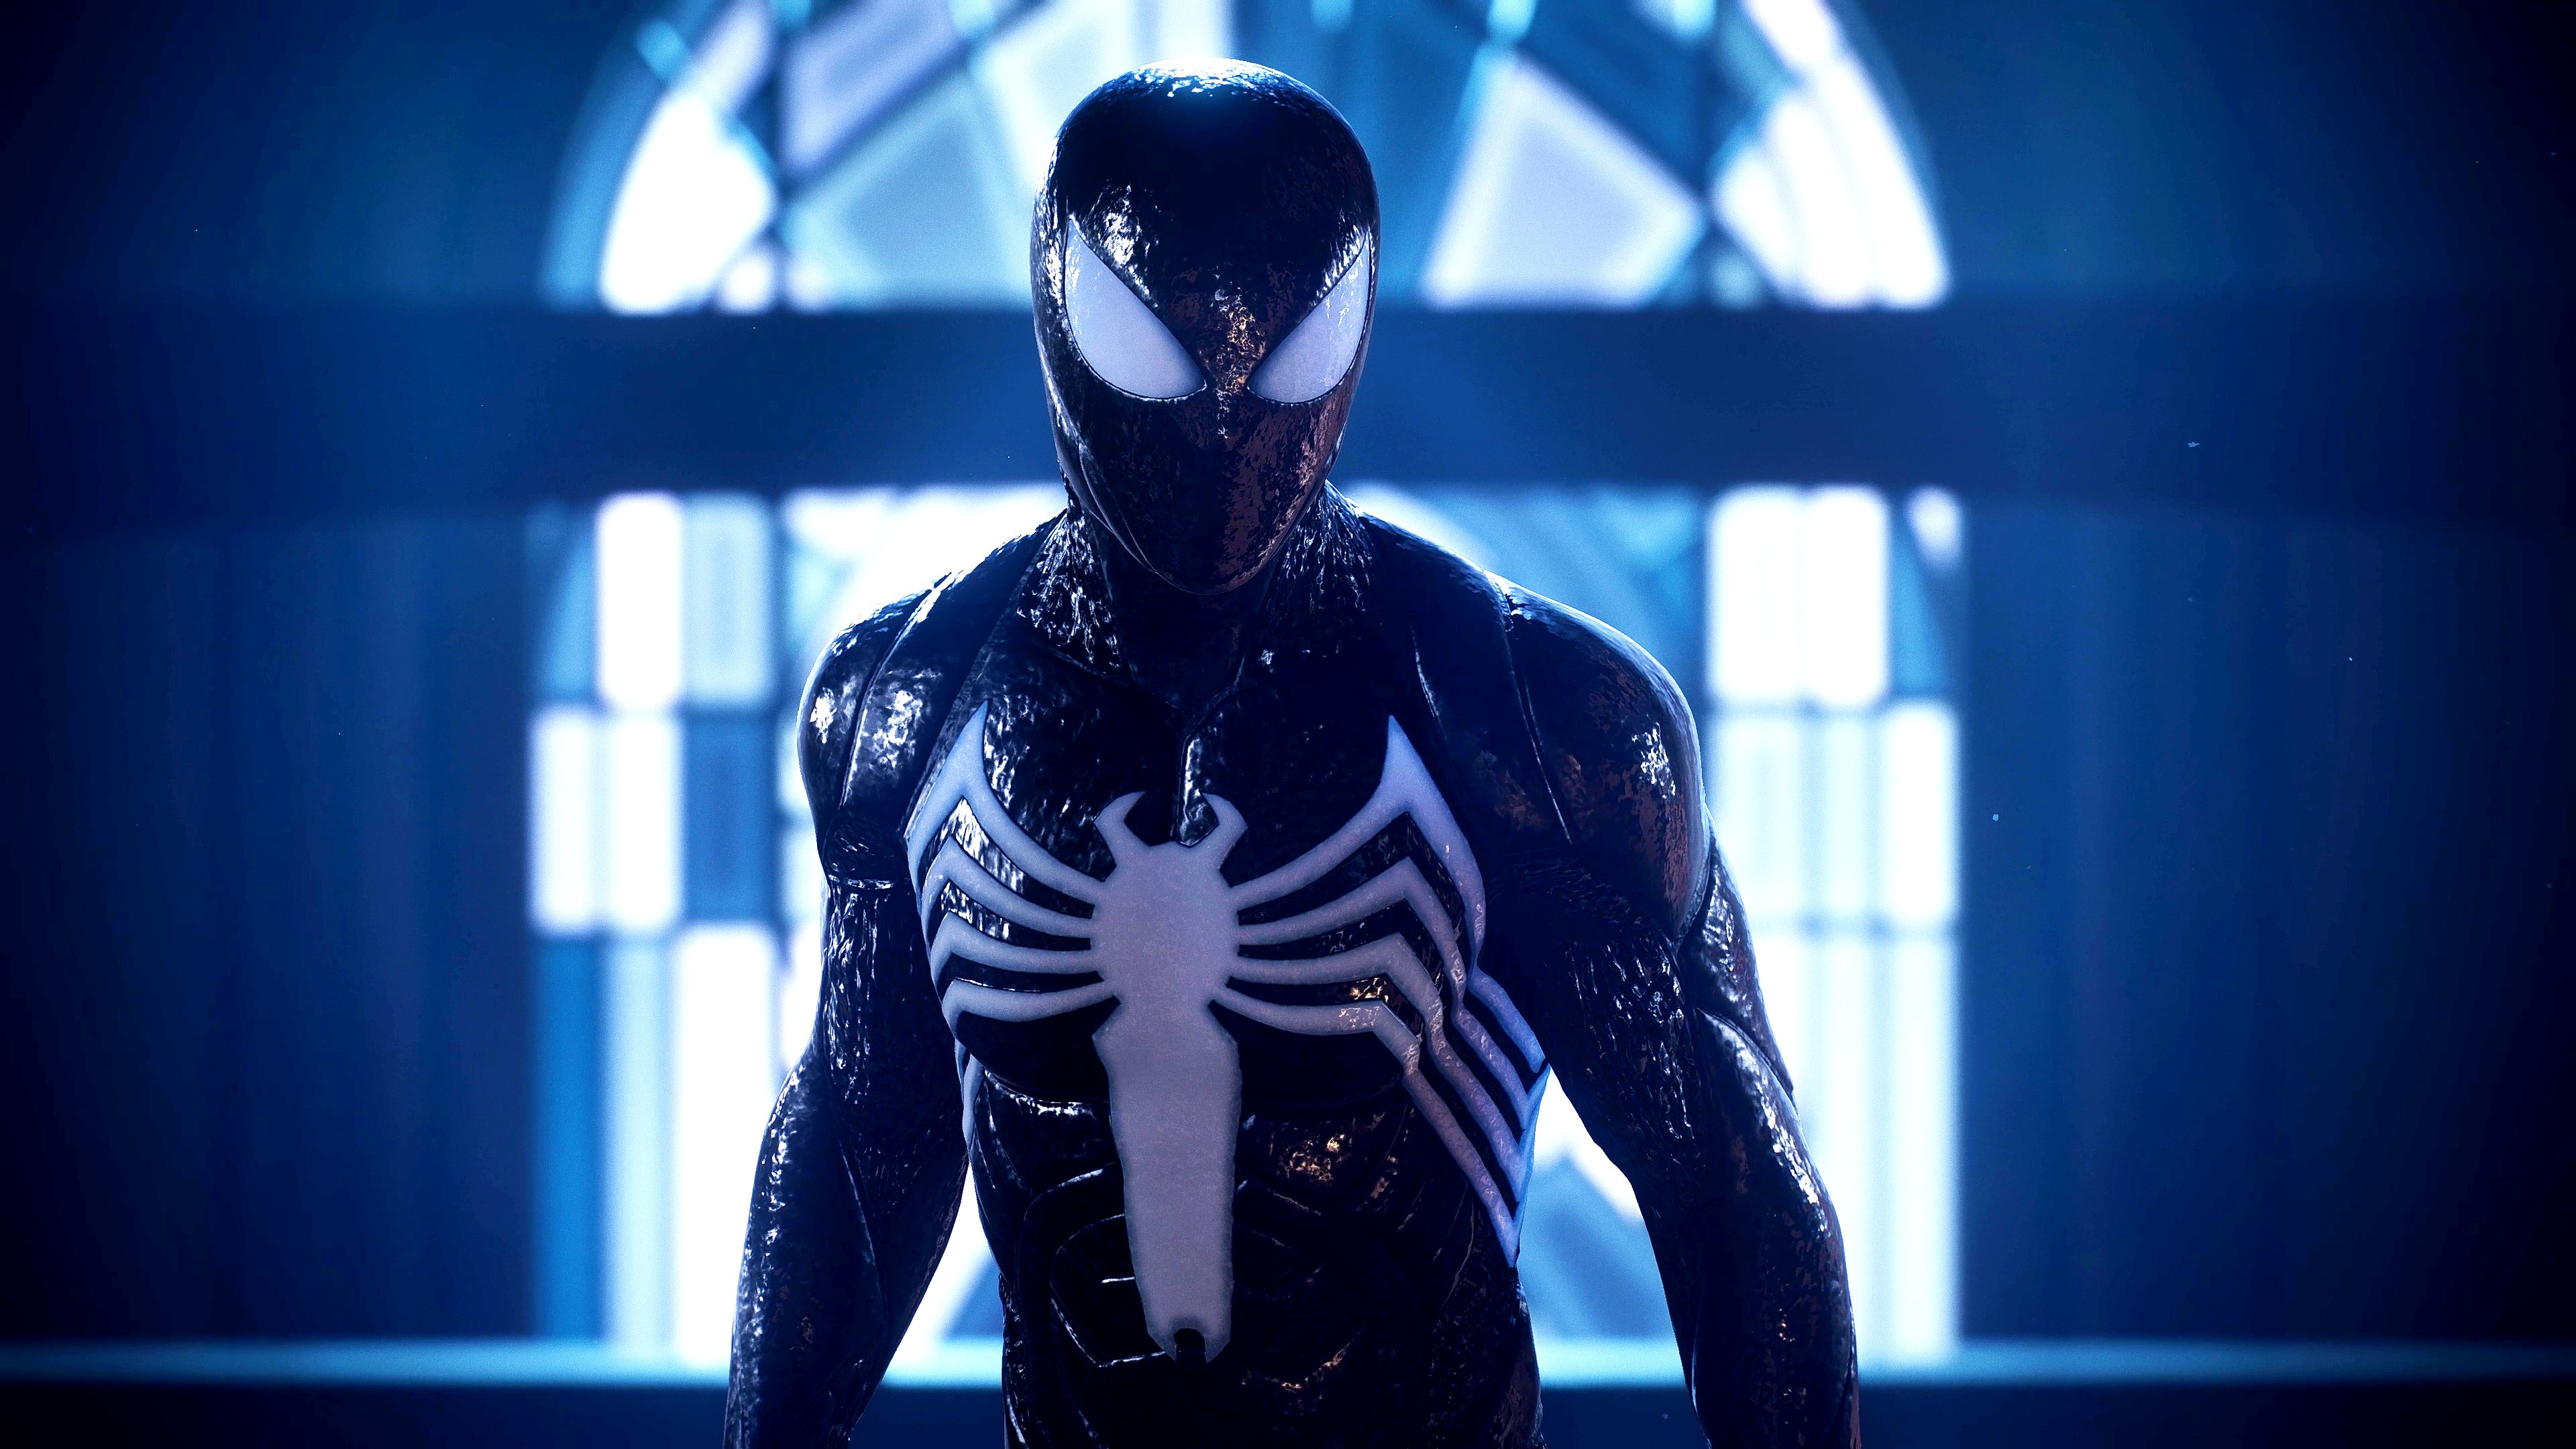 Es este el DualSense más bonito? - Marvel's Spider-Man 2 Unboxing 